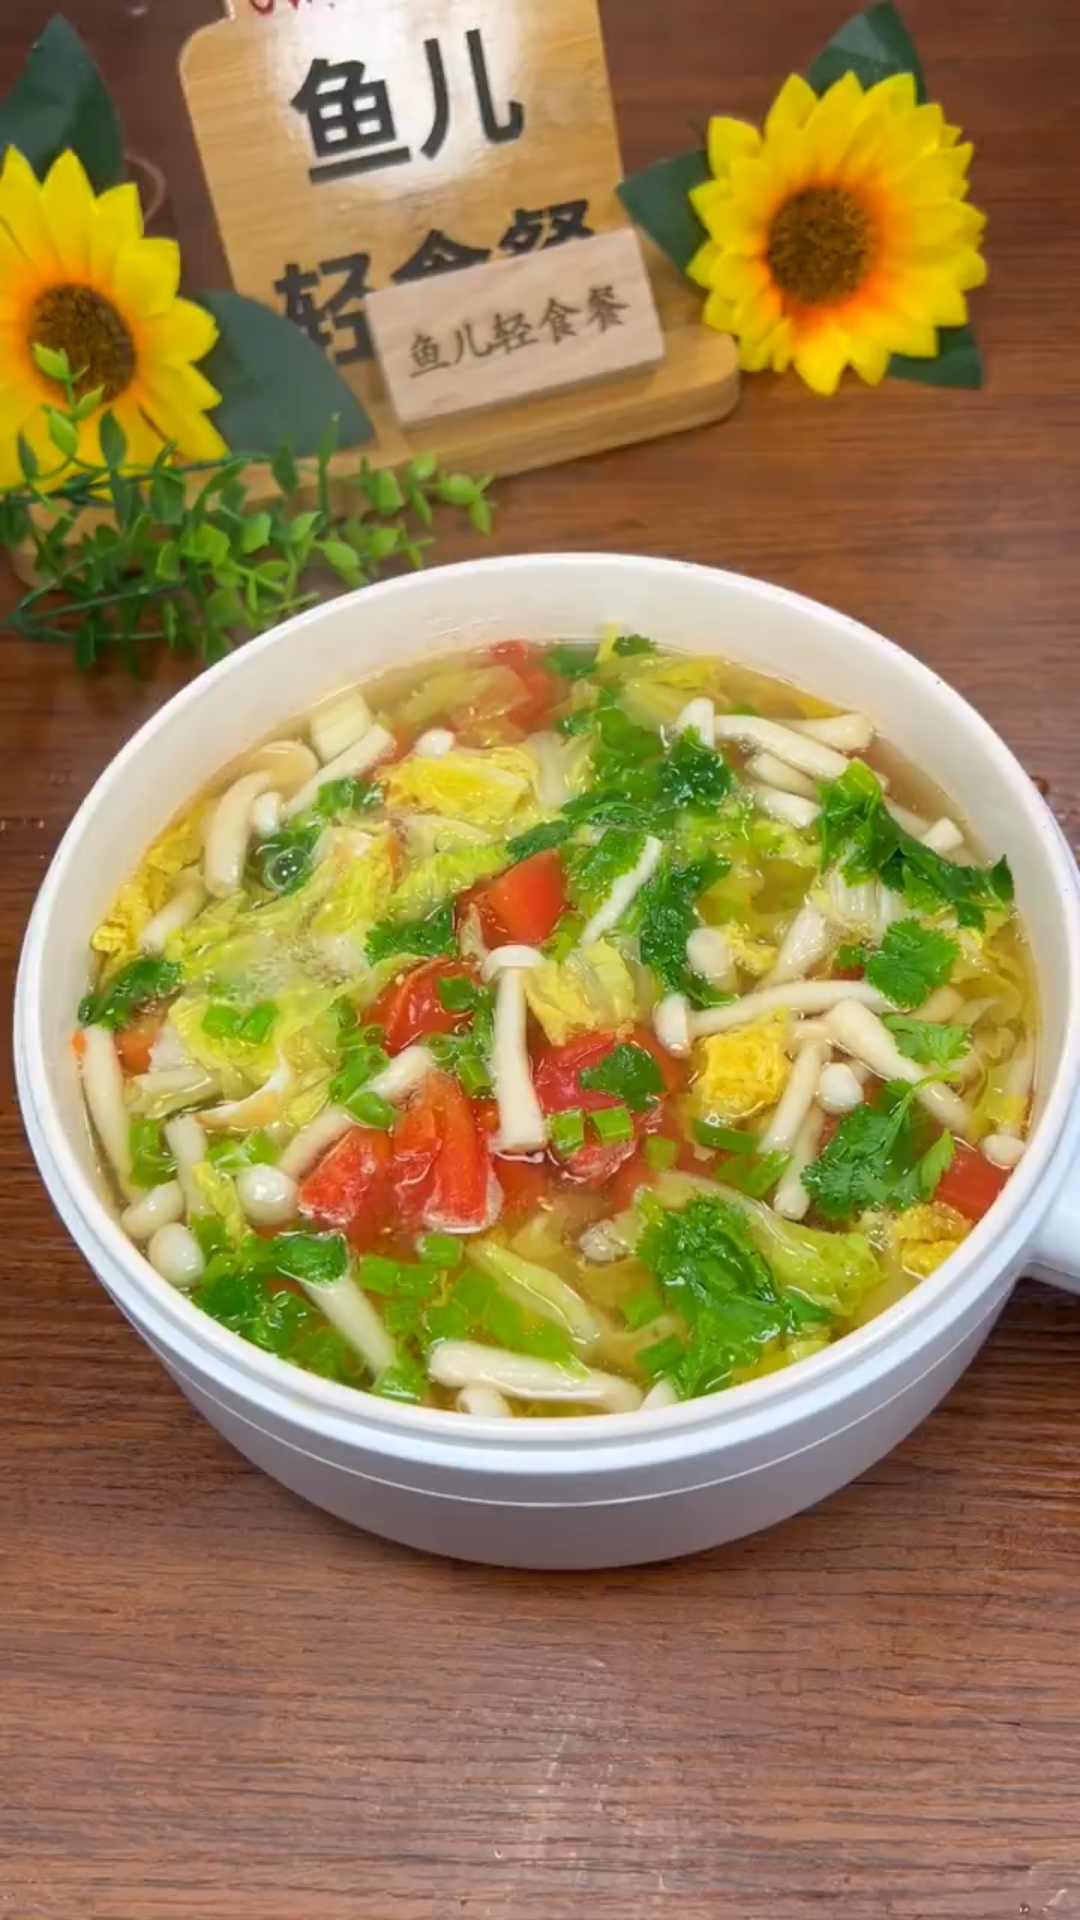 减脂餐分享蔬菜菌菇汤很好的提高新陈代谢特别适合减脂的人试一试